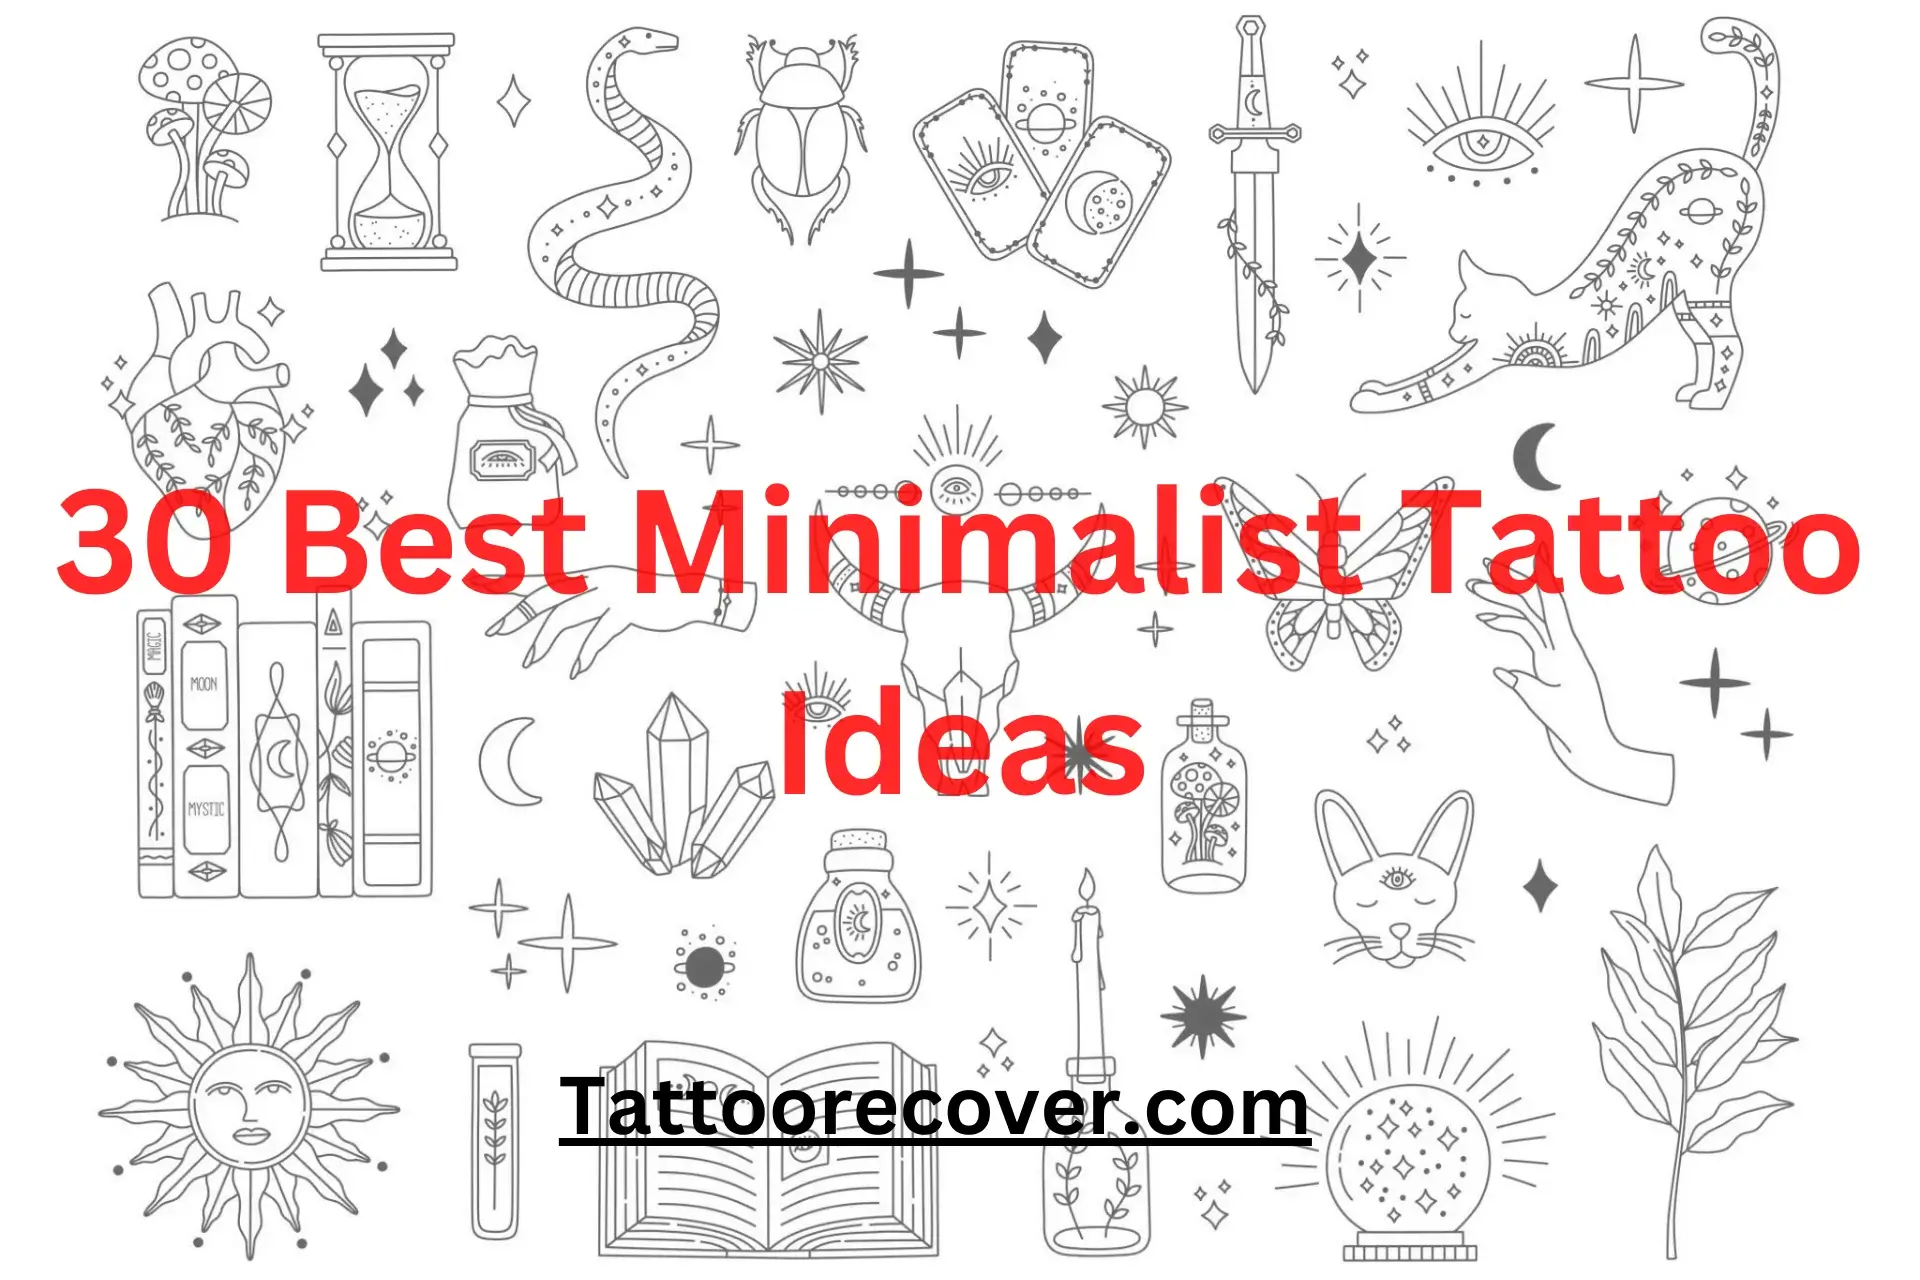 30 Best Minimalist Tattoo Ideas